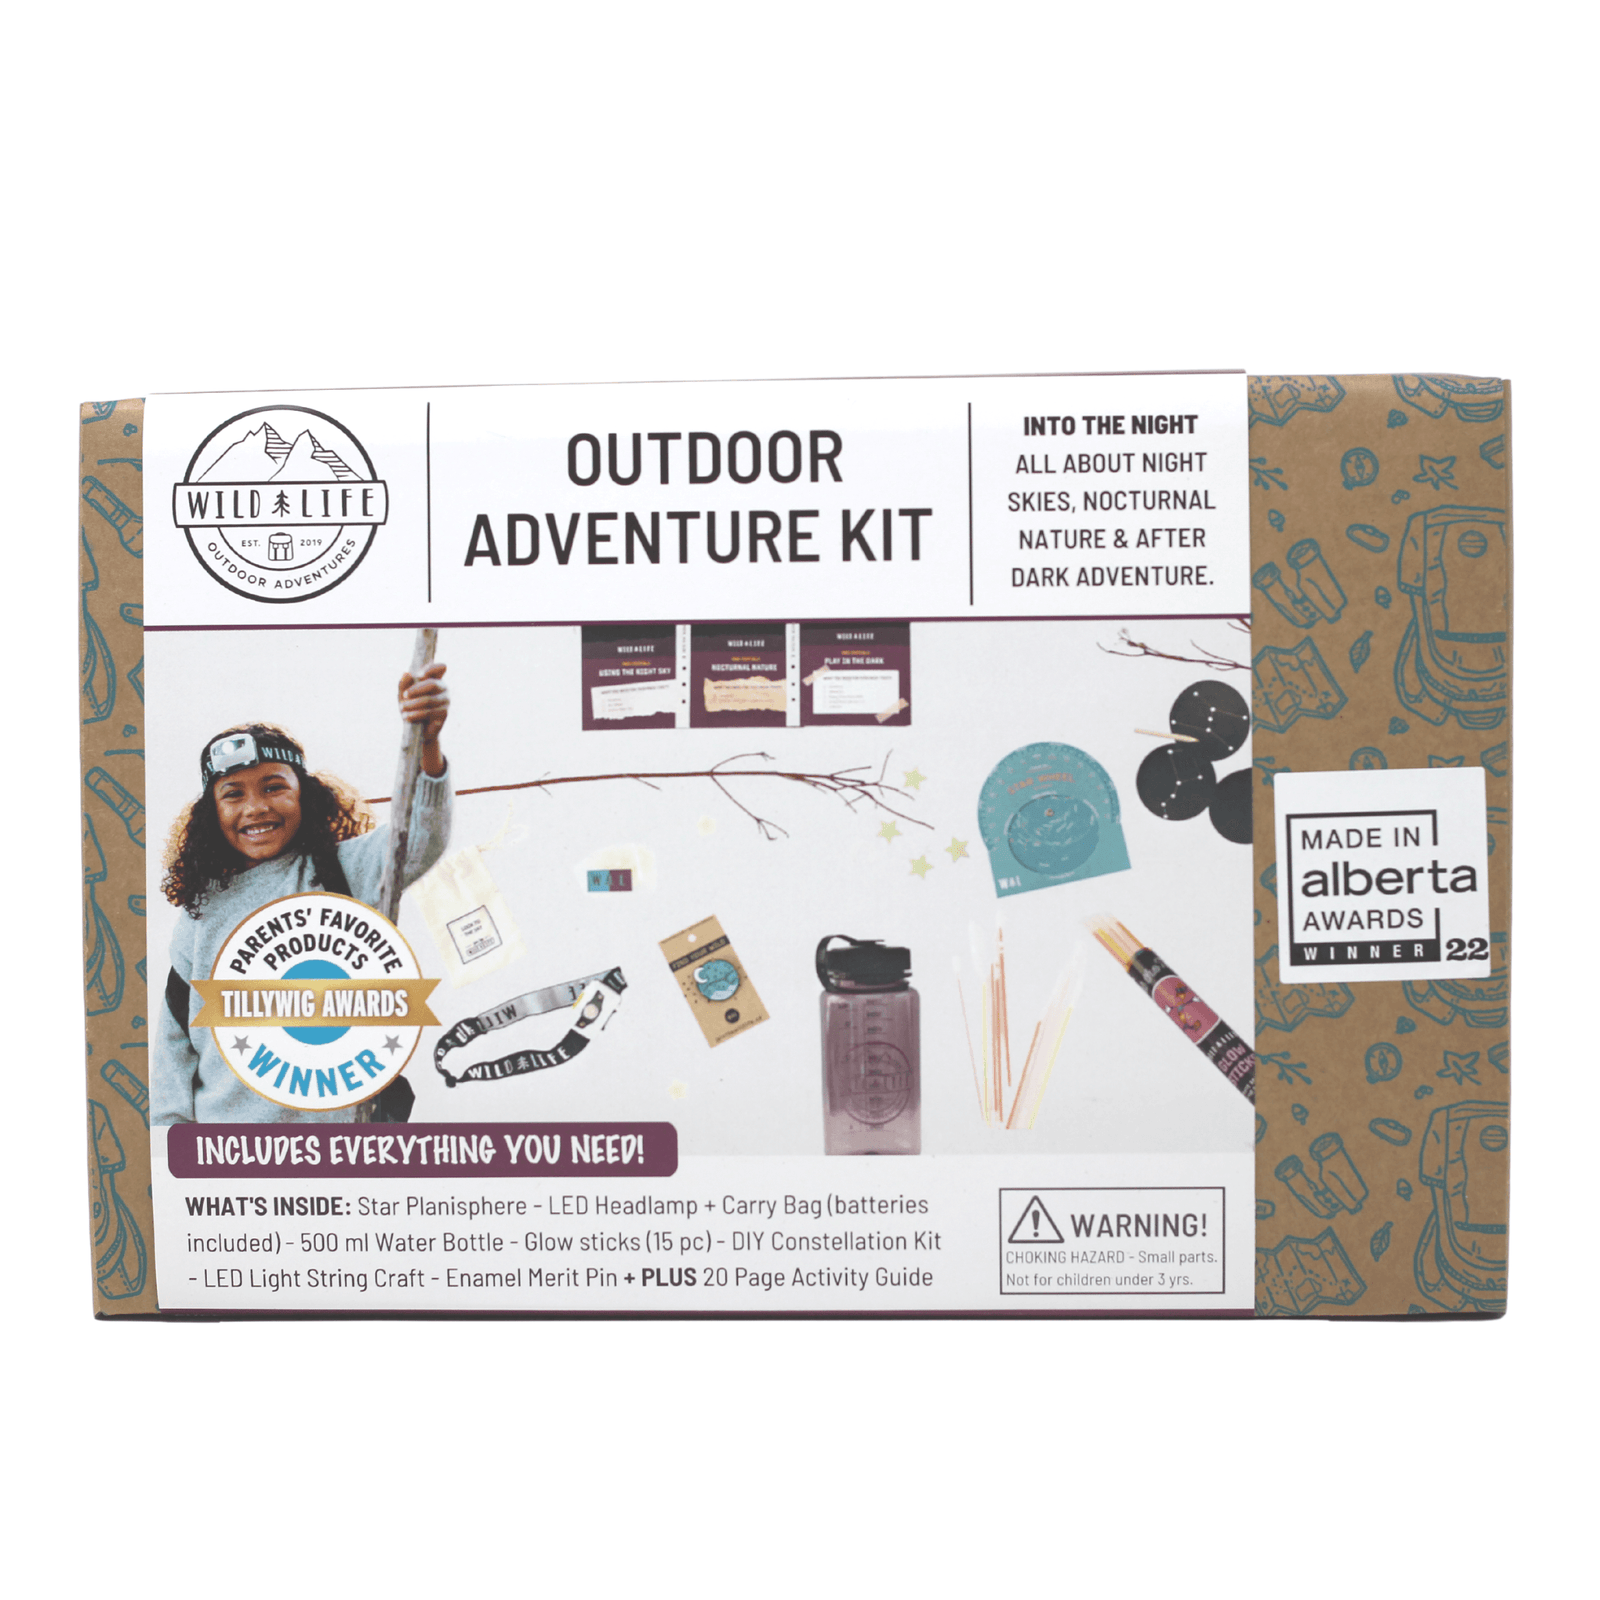 Adventure Kits - Wild  Life Outdoor Adventures